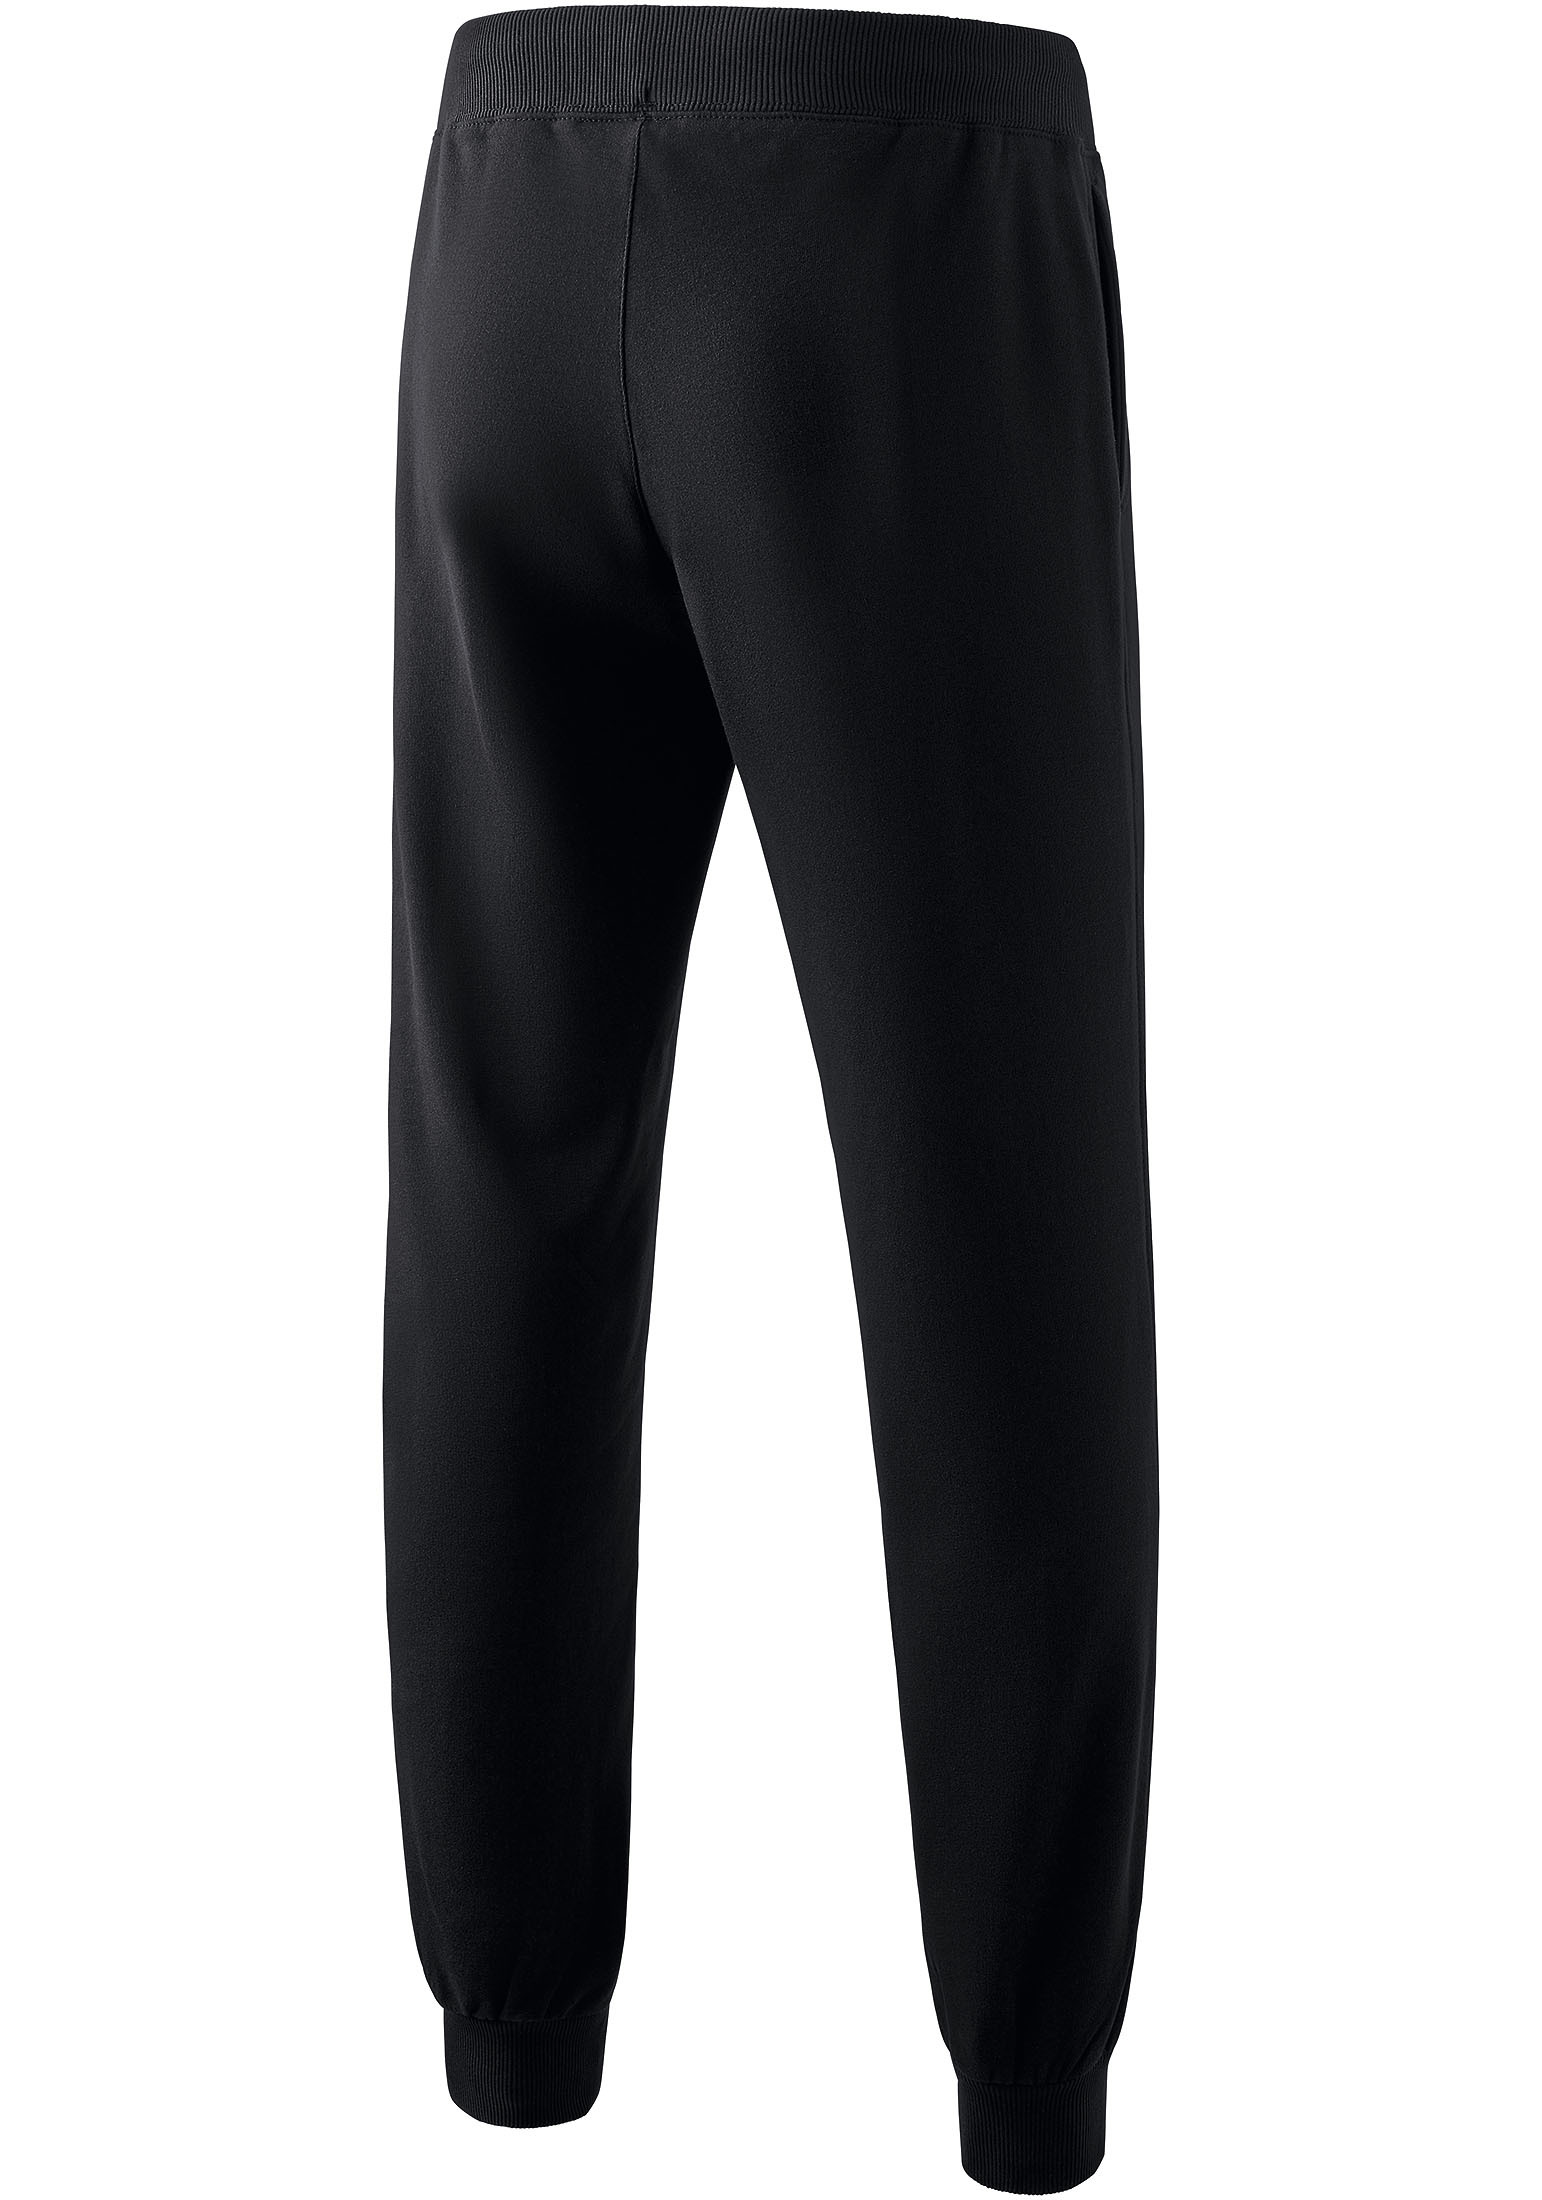 Спортивные брюки erima Sweatpants, черный спортивные брюки burberry shark appliqué sweatpants black черный